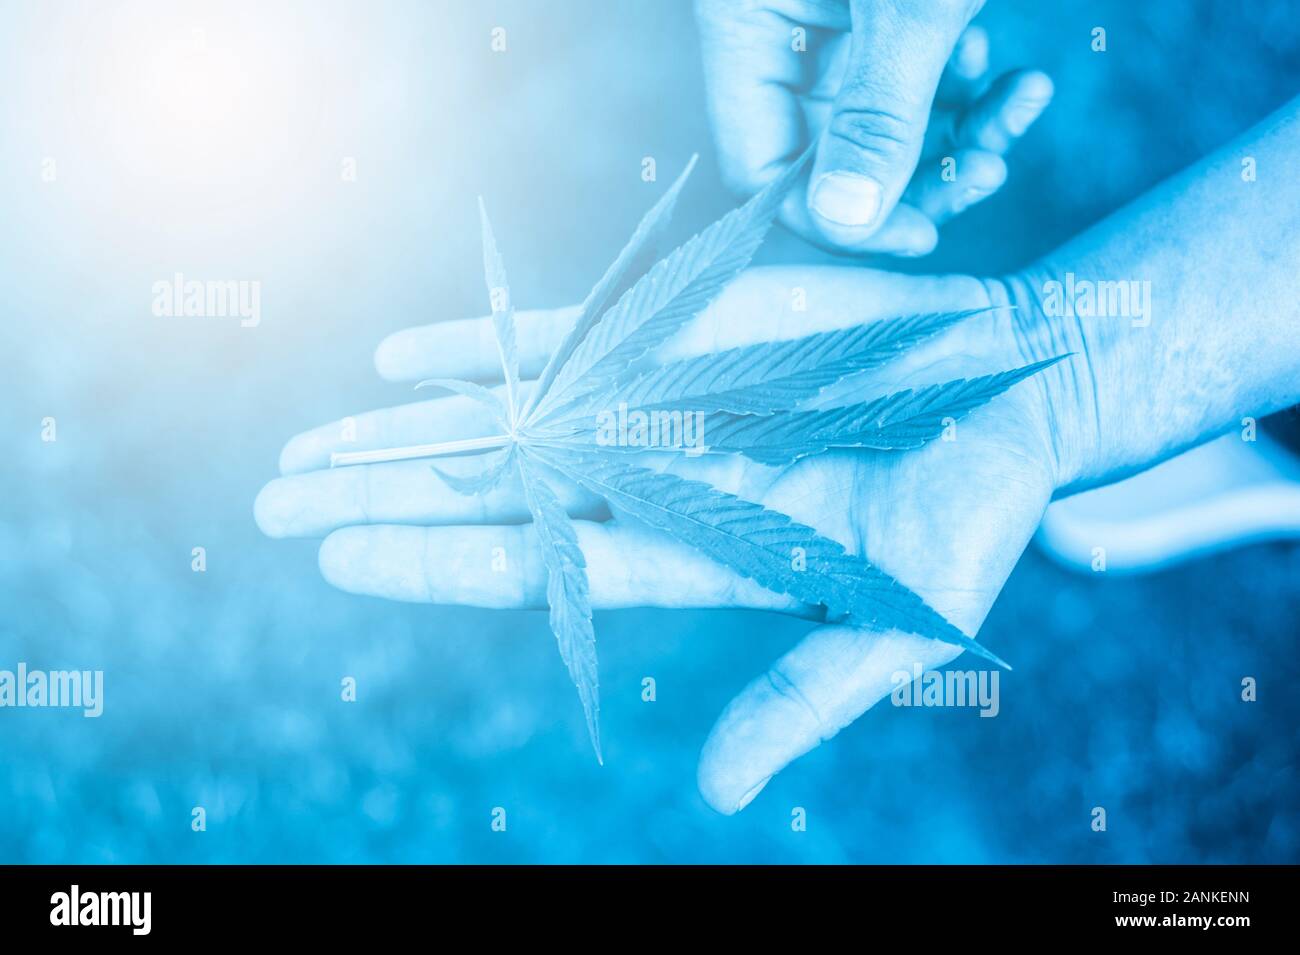 La marijuana médicale. Légaliser le cannabis comme un produit médical. Une feuille de marijuana dans la main. B|ue filter Banque D'Images